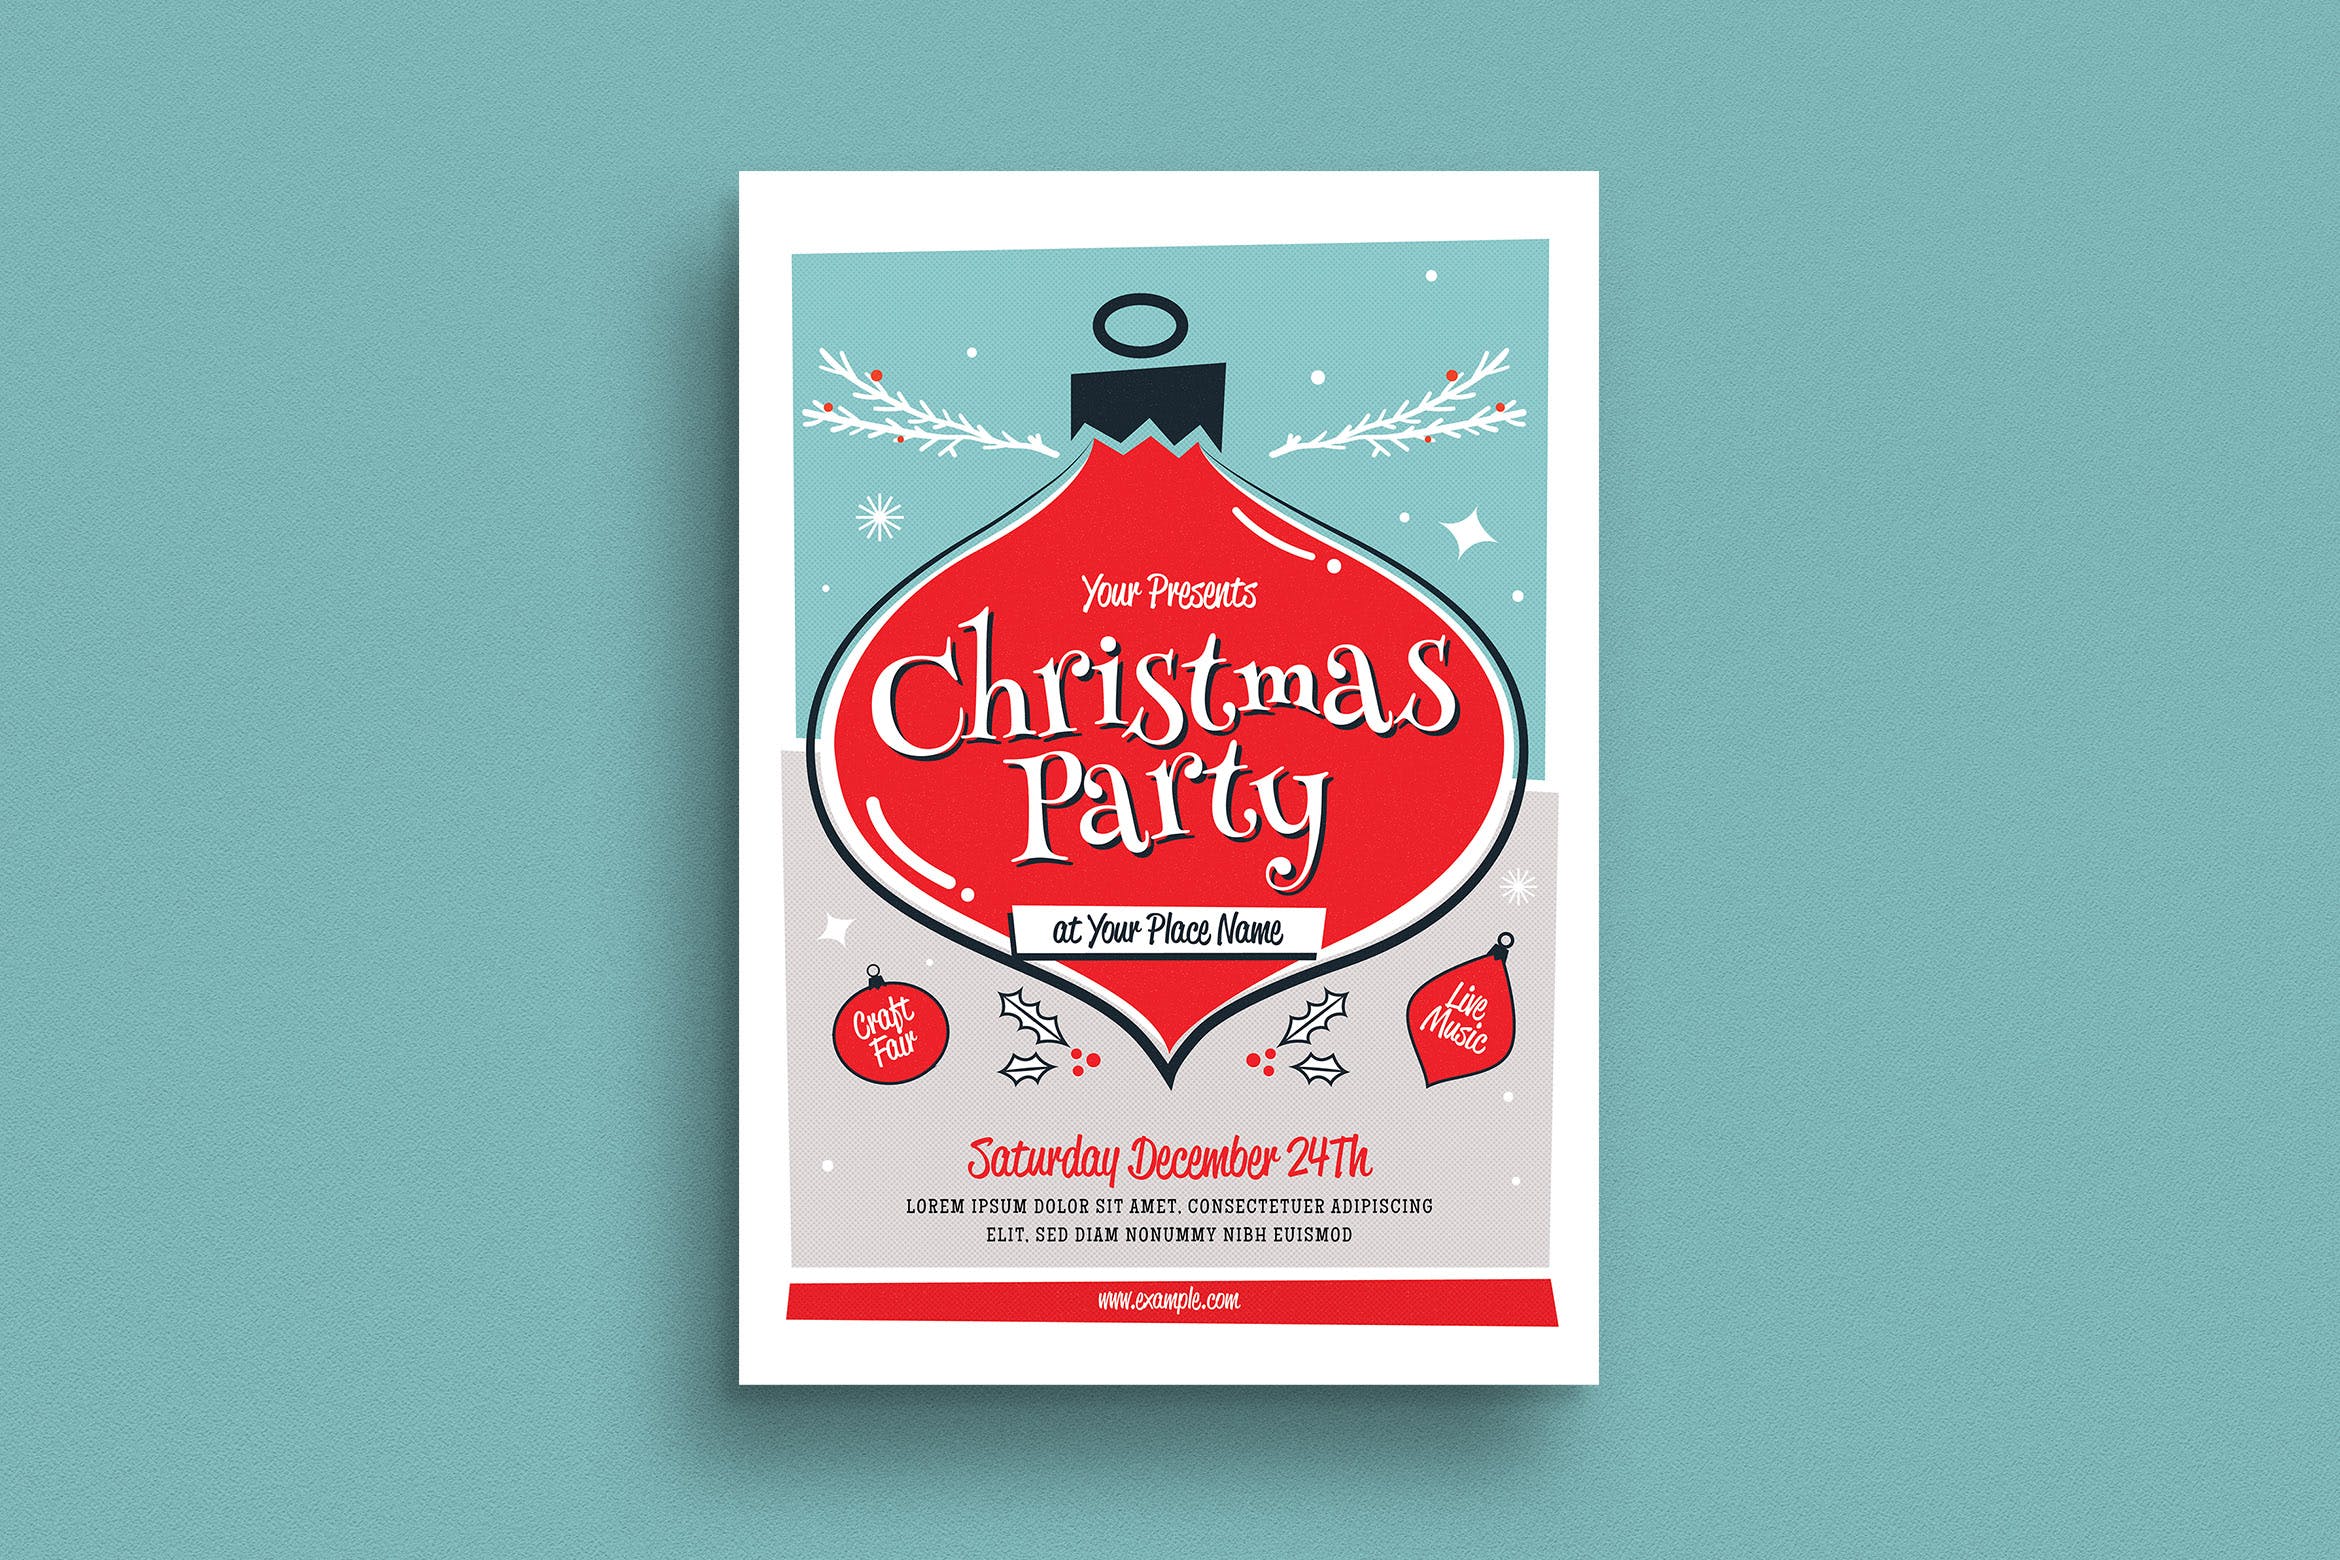 复古设计风格圣诞节活动海报传单模板 Christmas Event Flyer插图